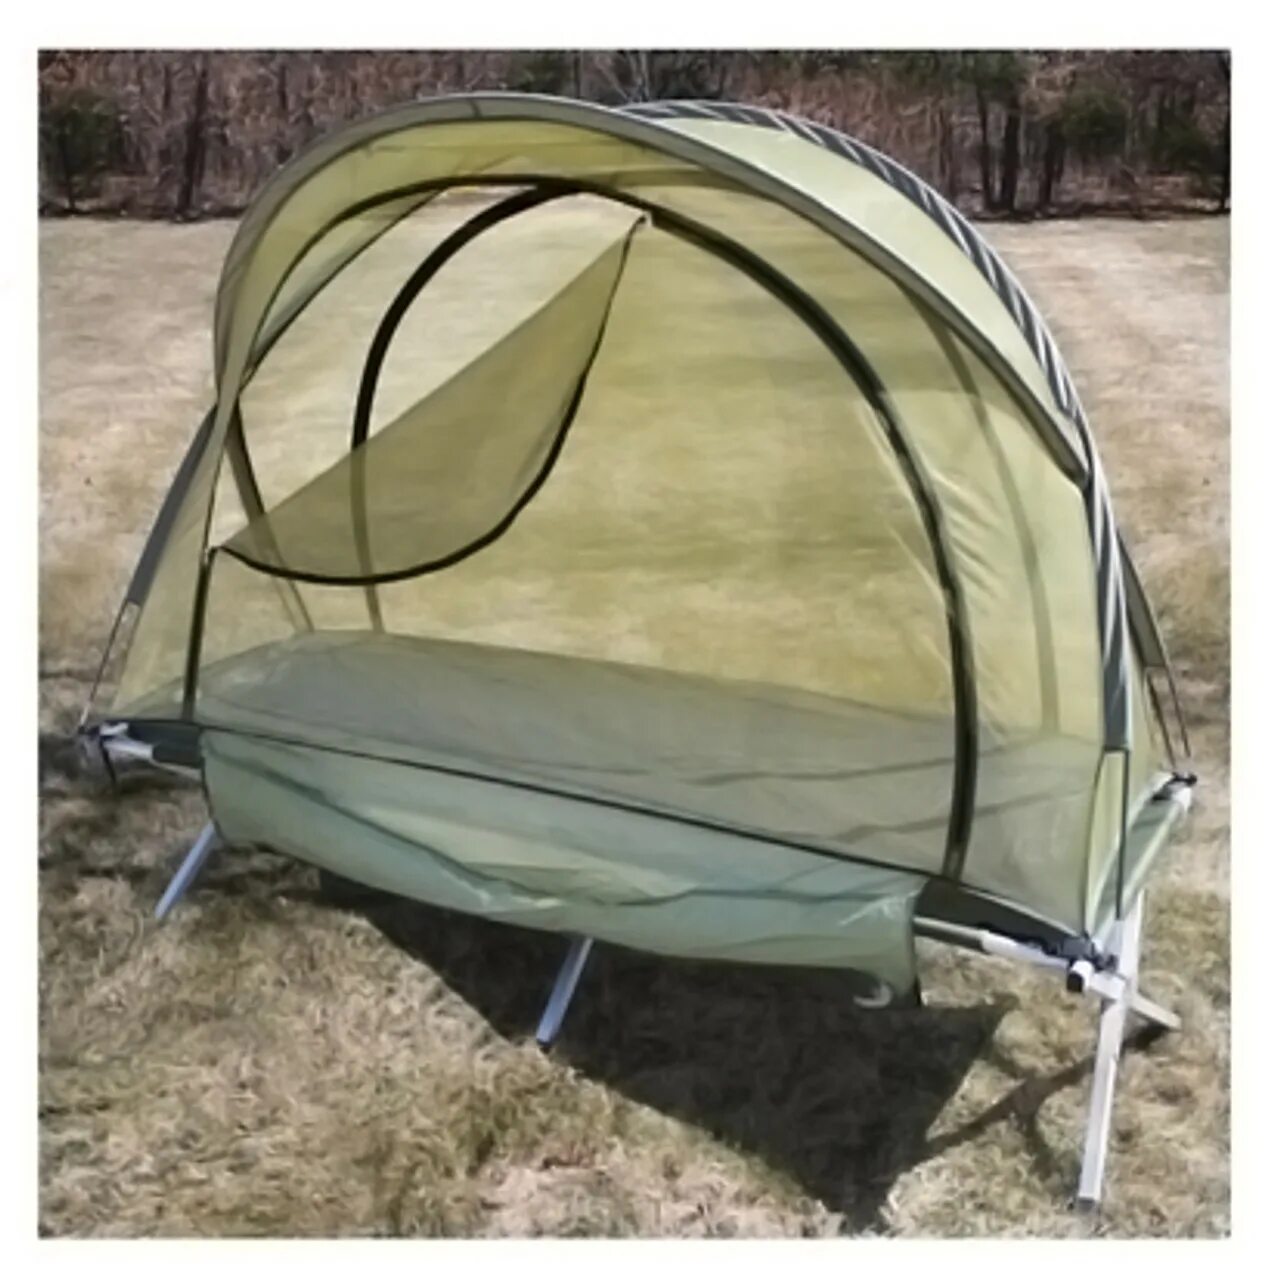 Куплю бу палатку для рыбалки. Антимоскитная палатка. Москитная палатка для рыбалки. Палатка сетка. Палатка с москитной сеткой.